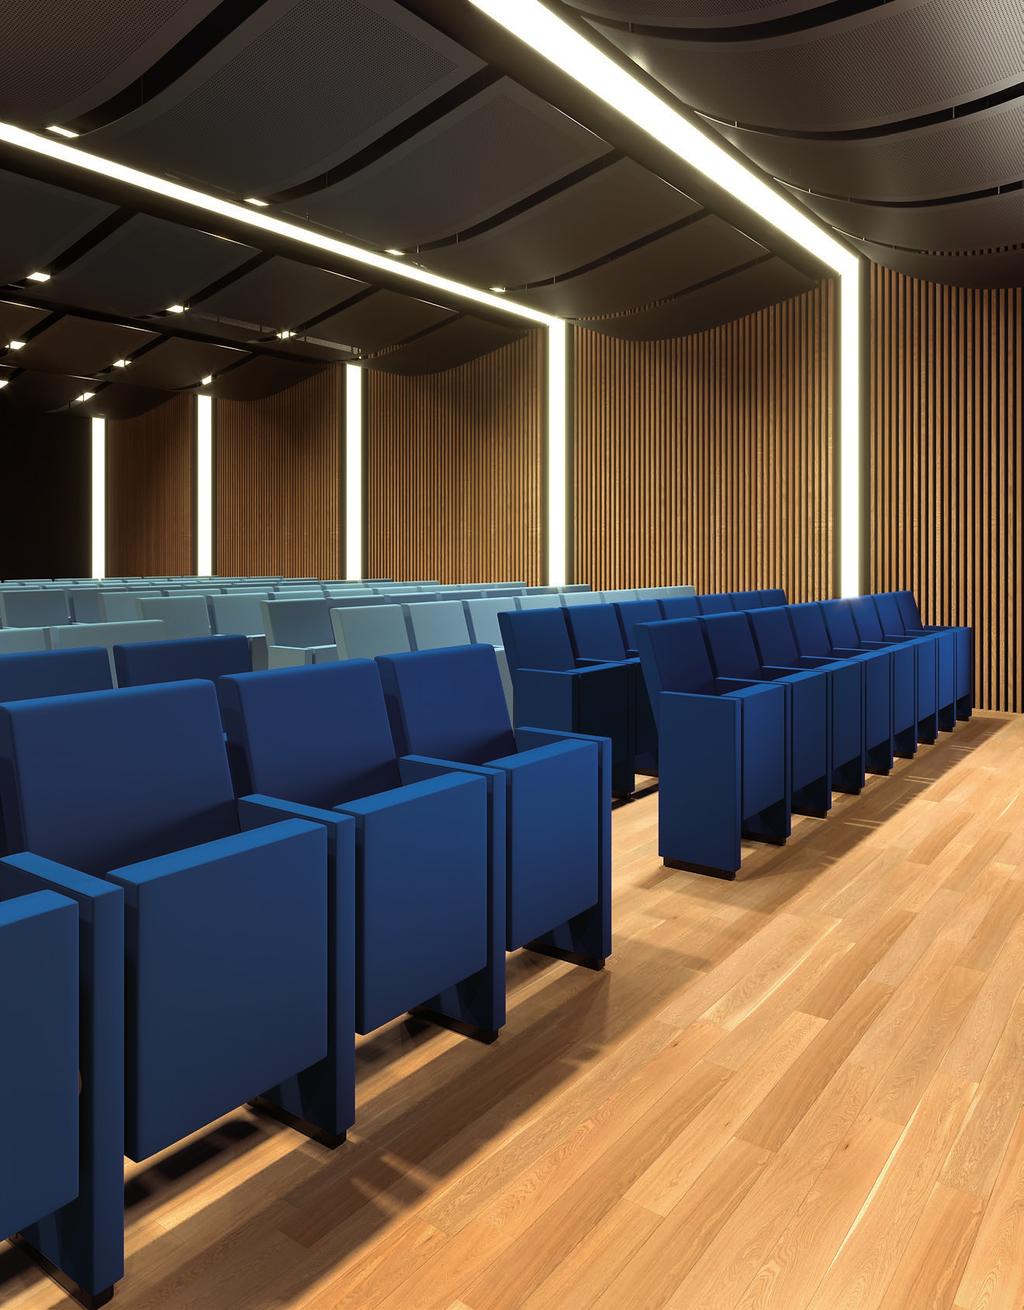 molte situazioni e configurazioni. Seating collection for auditorium and conference rooms.